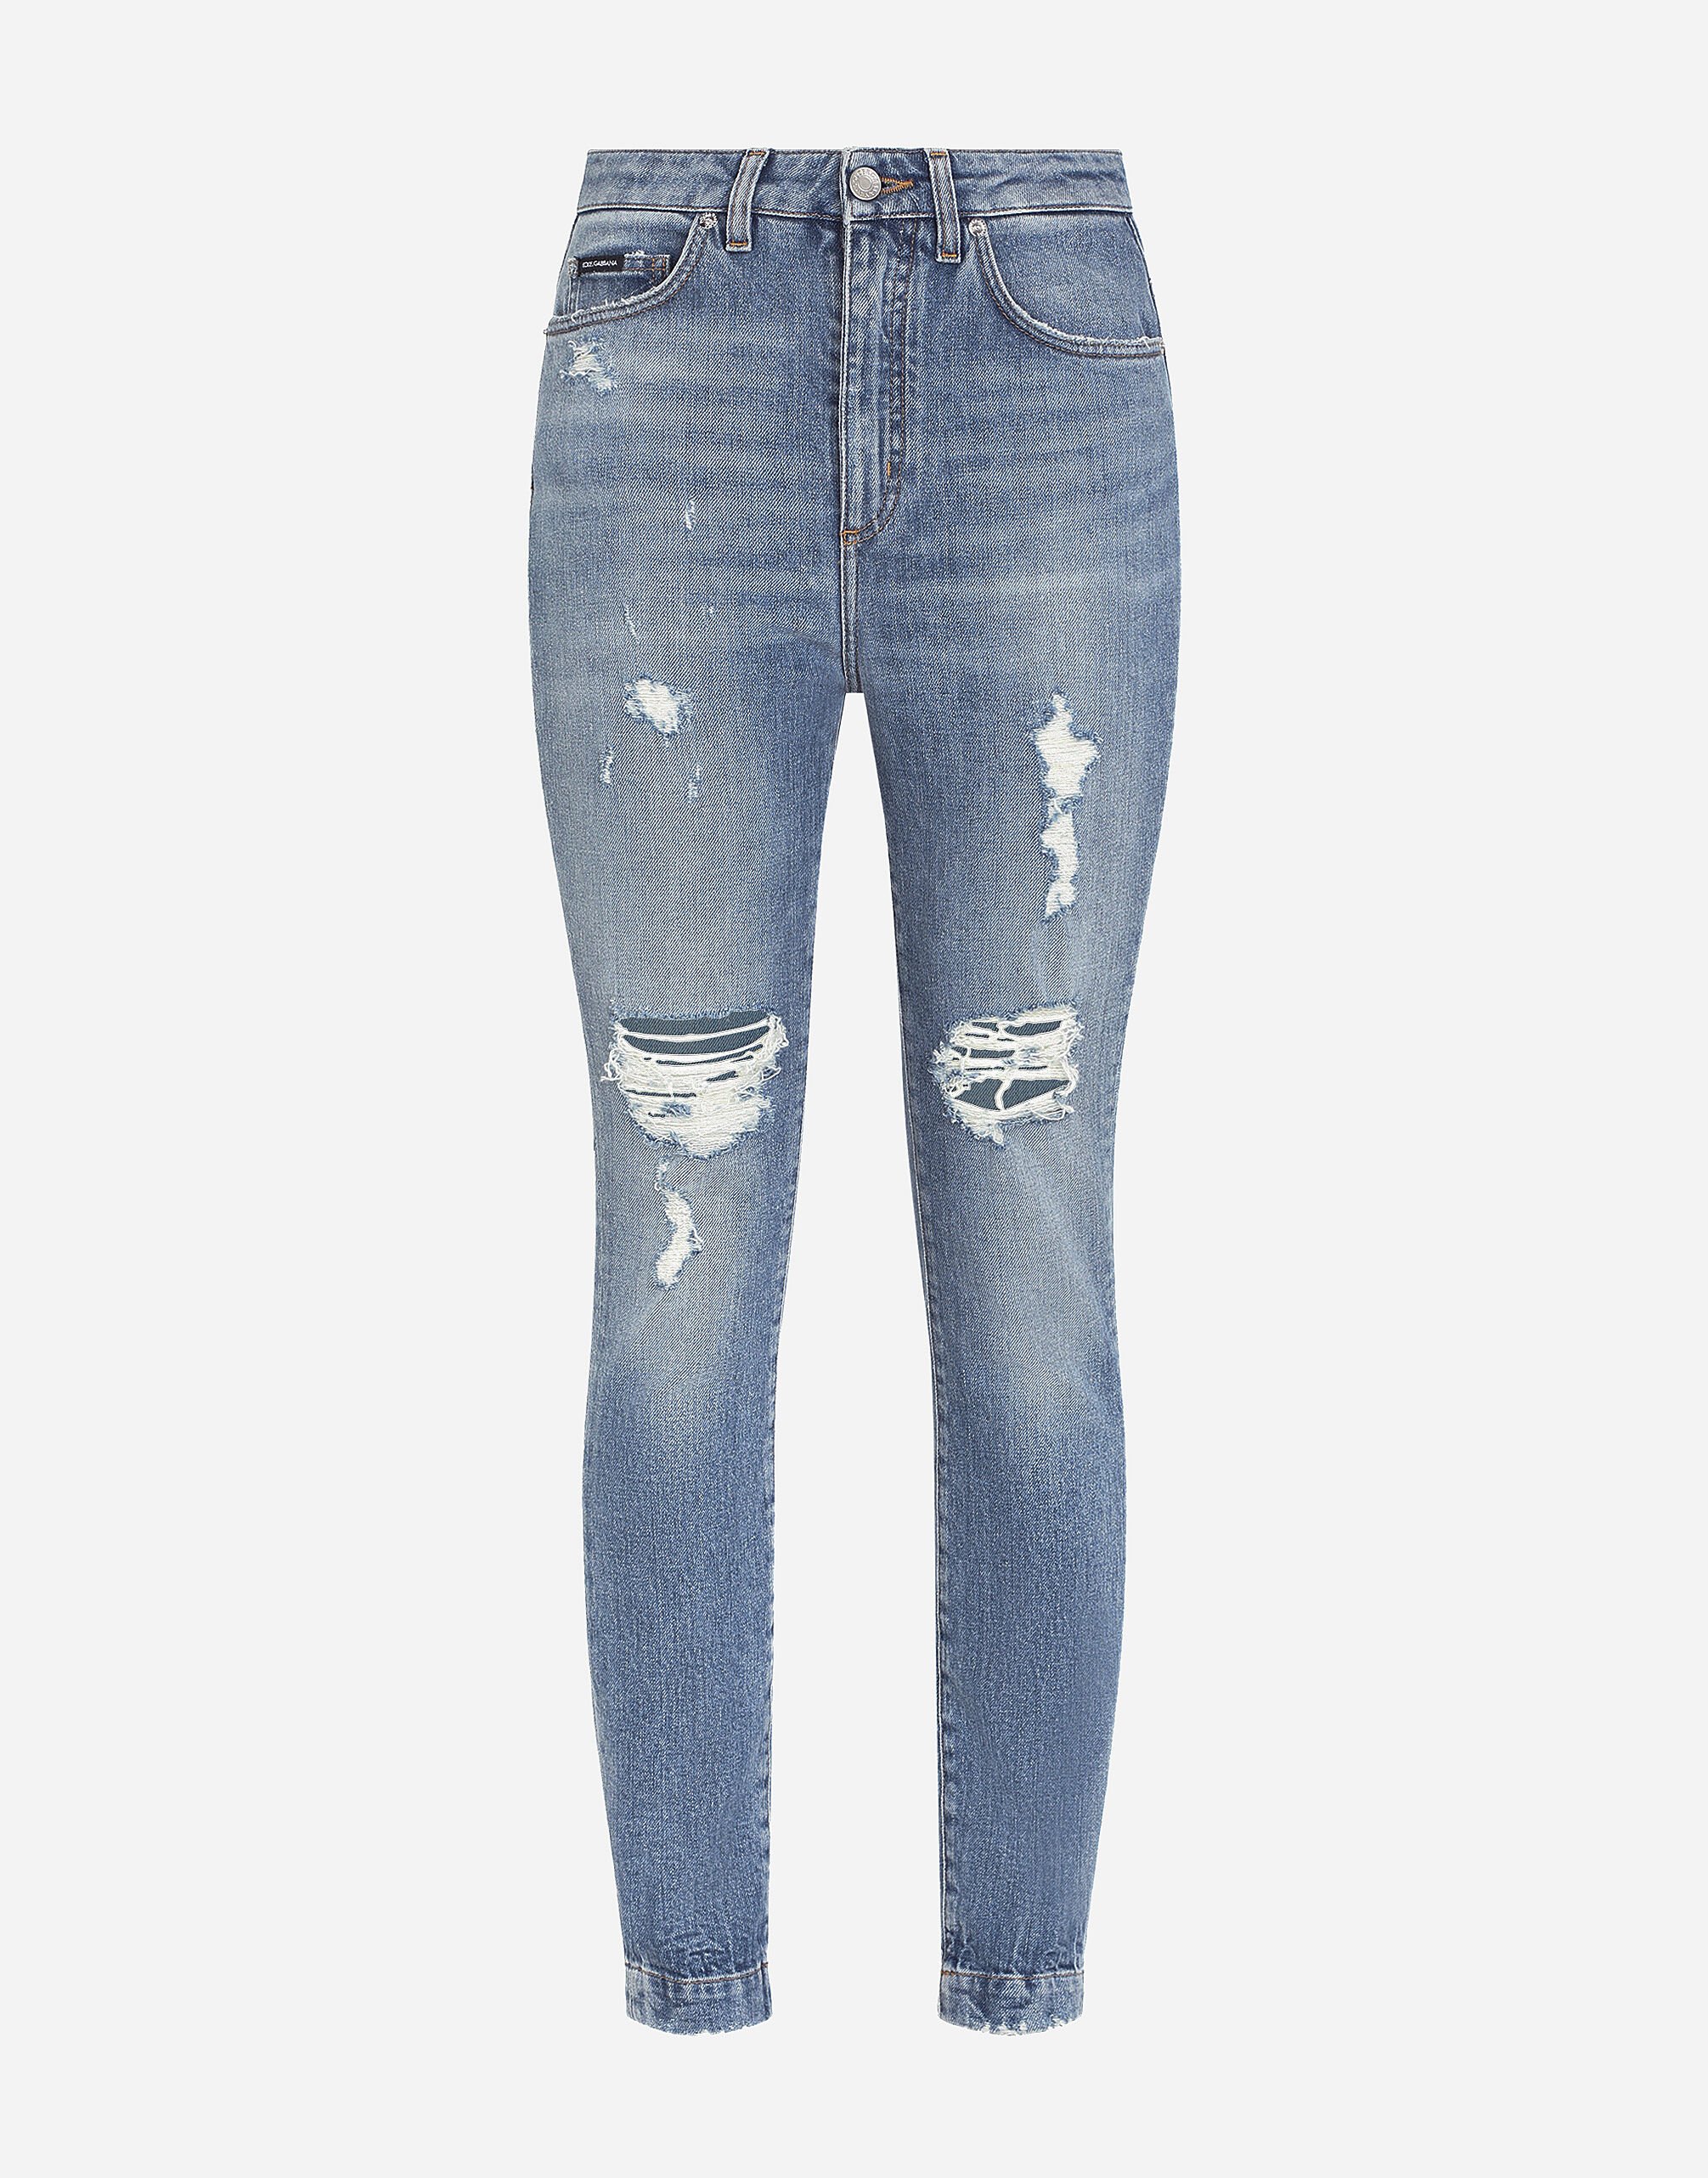 Dolce & Gabbana Stretch denim Audrey jeans with rips Denim BB6498AO621